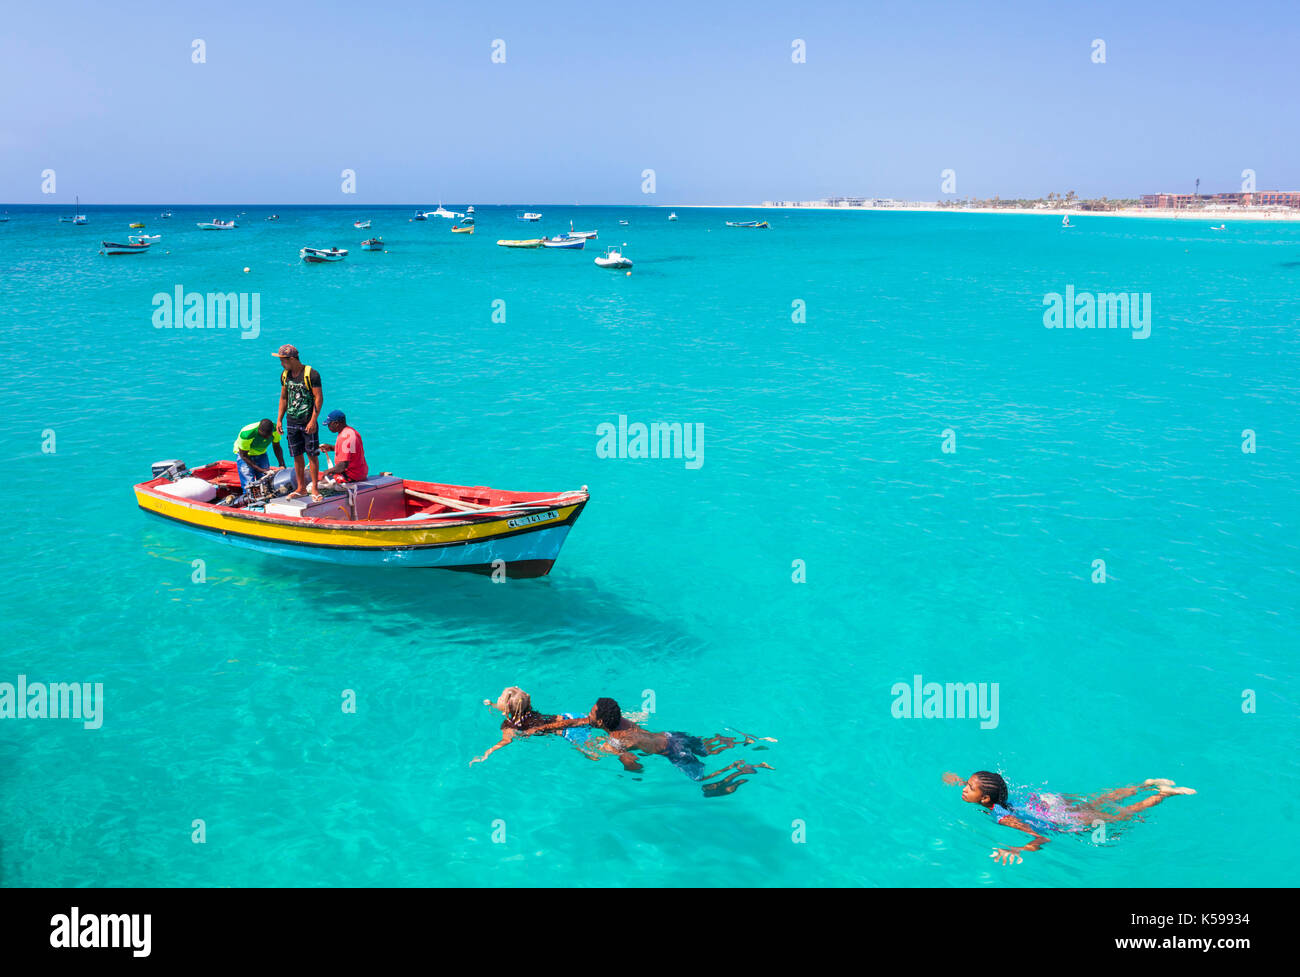 Kap VERDE-SAL Fischer bringen ihren Fang von Fischen in Angelboote/Fischerboote zum Pier in Santa Maria, Insel Sal, Kapverdische Inseln, Afrika Stockfoto